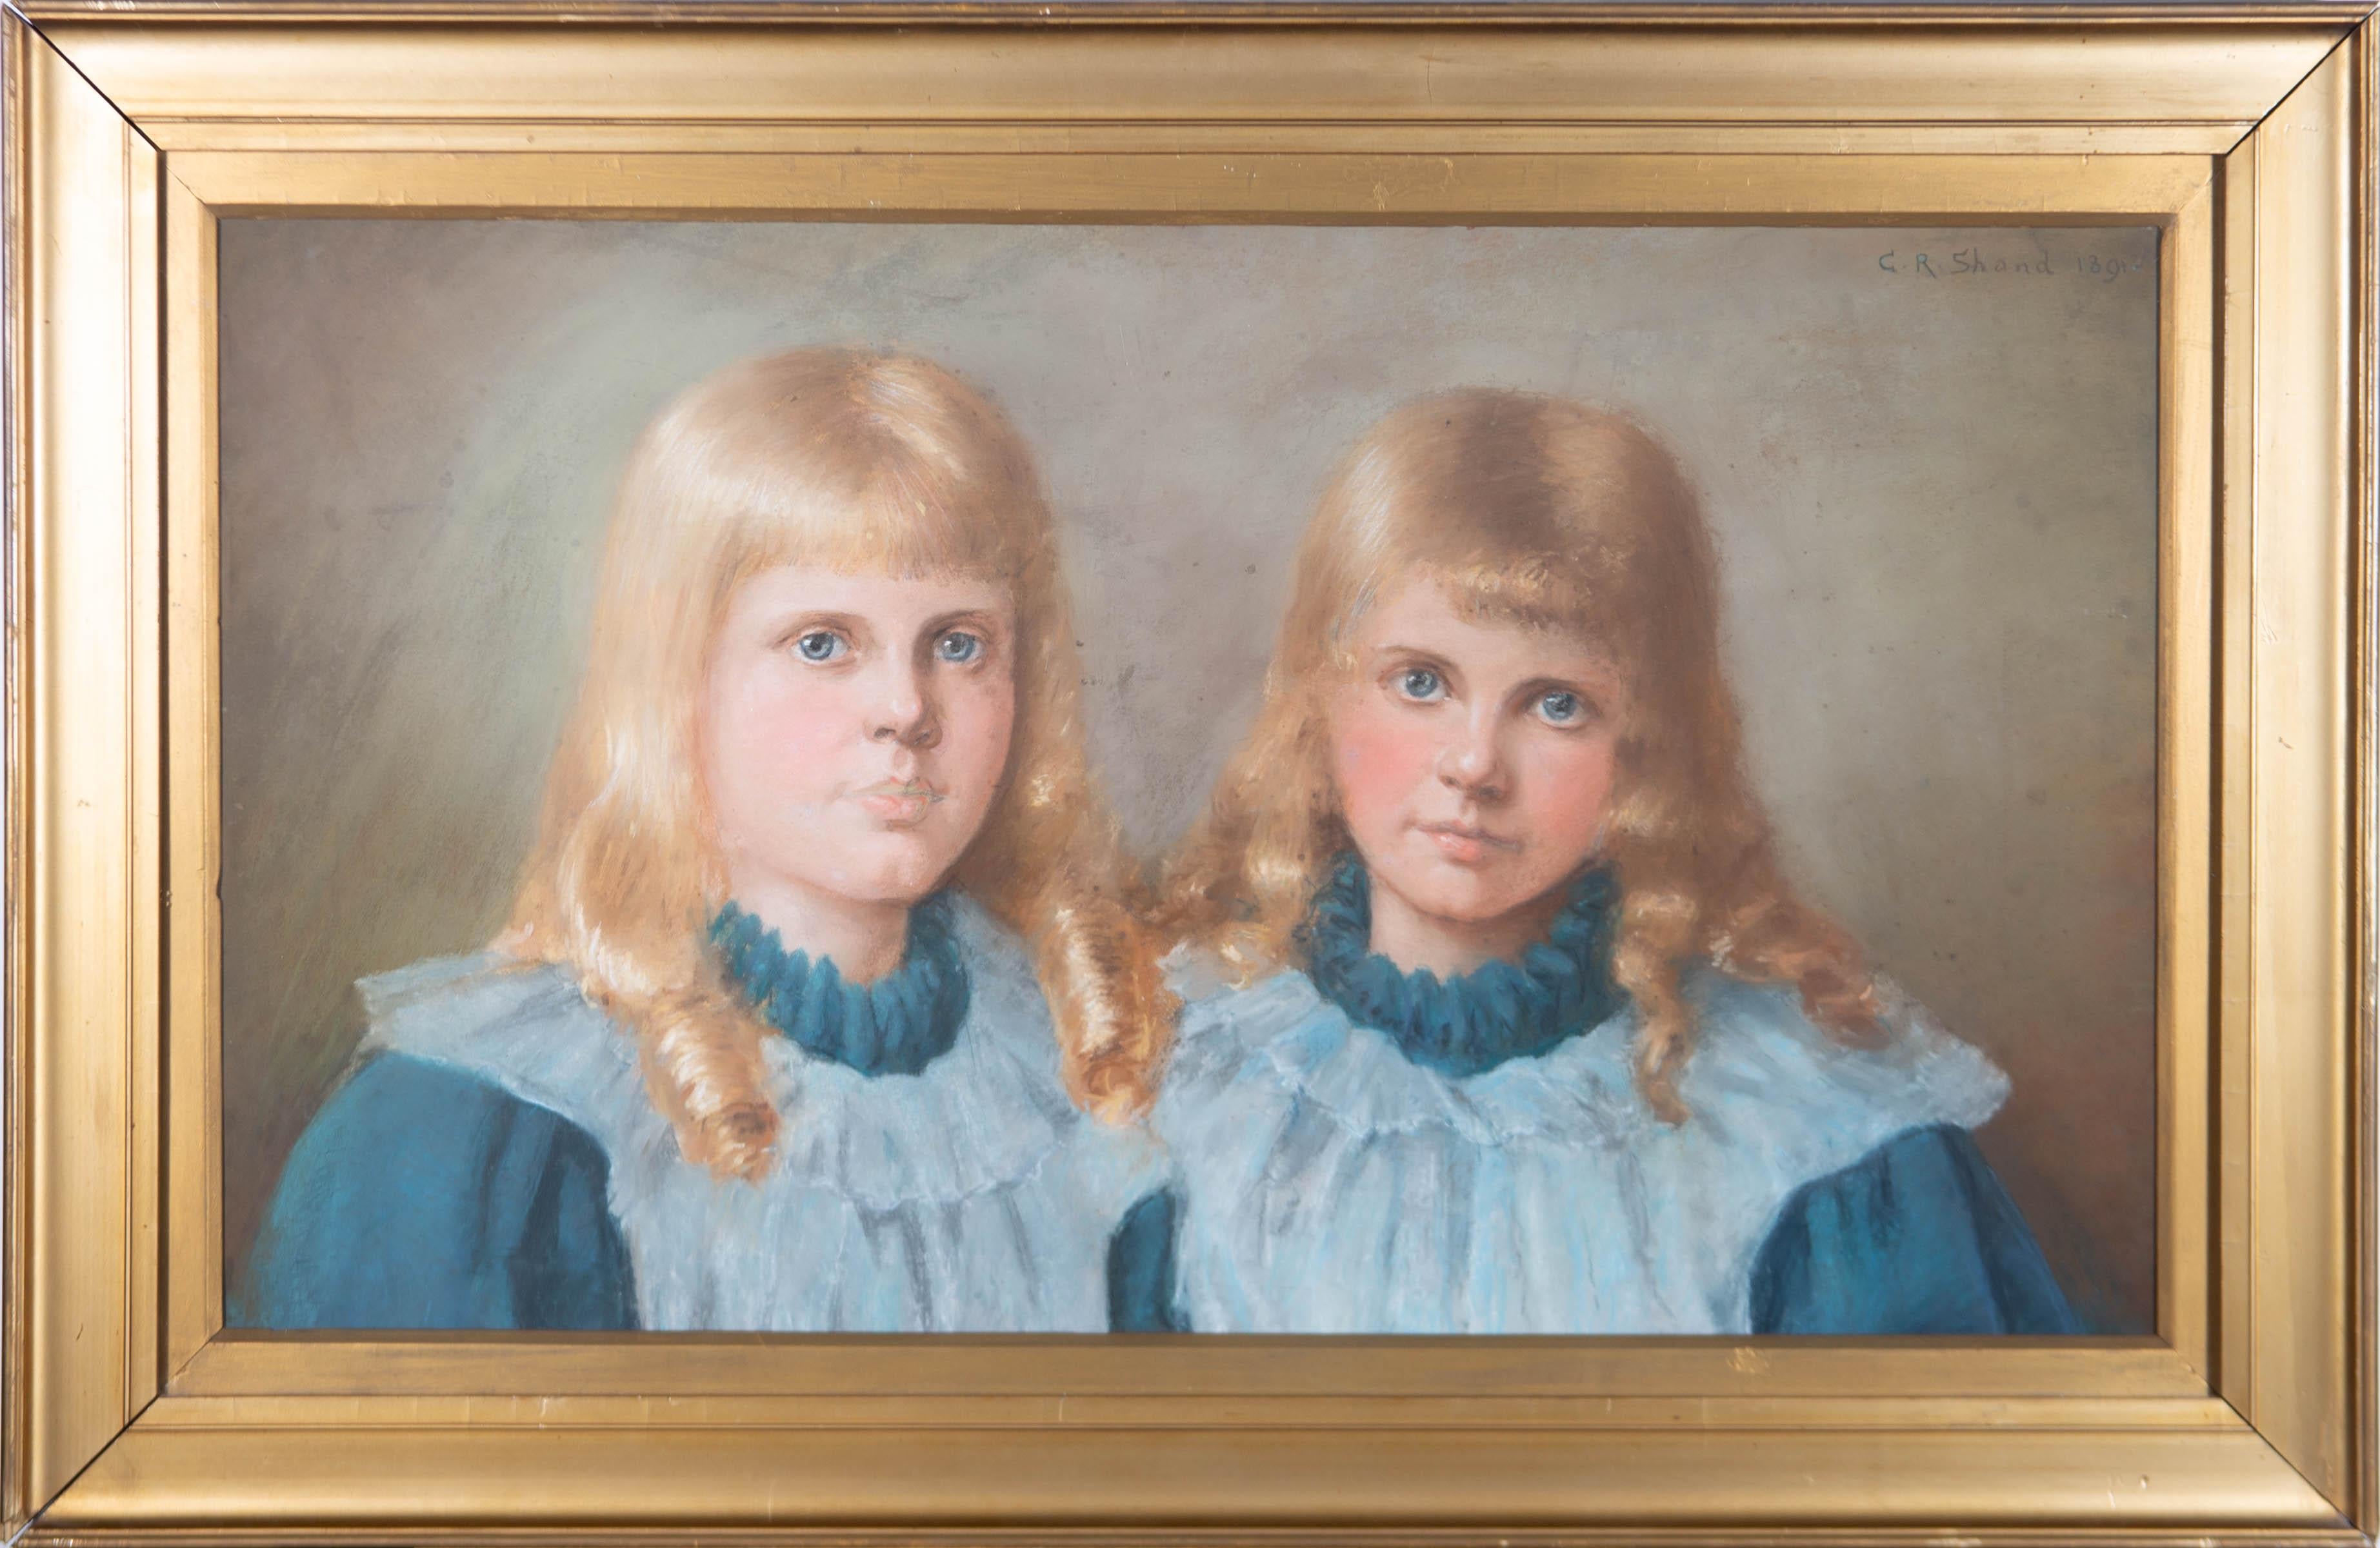 Mit Pastellfarben wird ein schönes Porträt von zwei Zwillingsmädchen in passenden blauen Kutten gemalt.

Ein bemerkenswertes Porträt von zwei Zwillingsmädchen.

Unterzeichnet und datiert.

Auf wove.